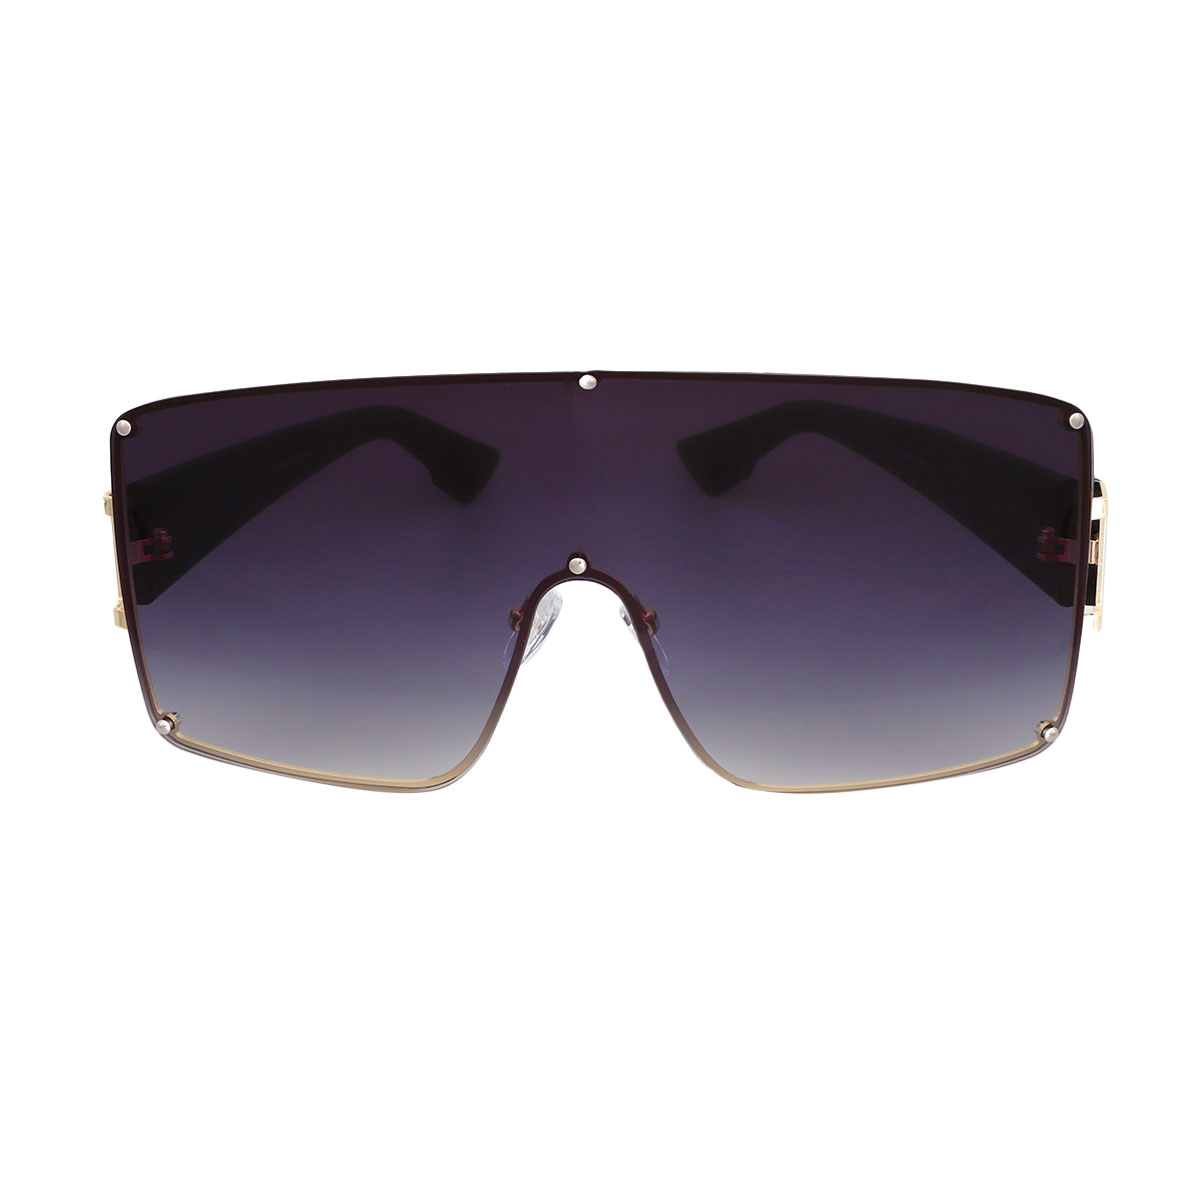 Black Gradient Square Visor Sunglasses